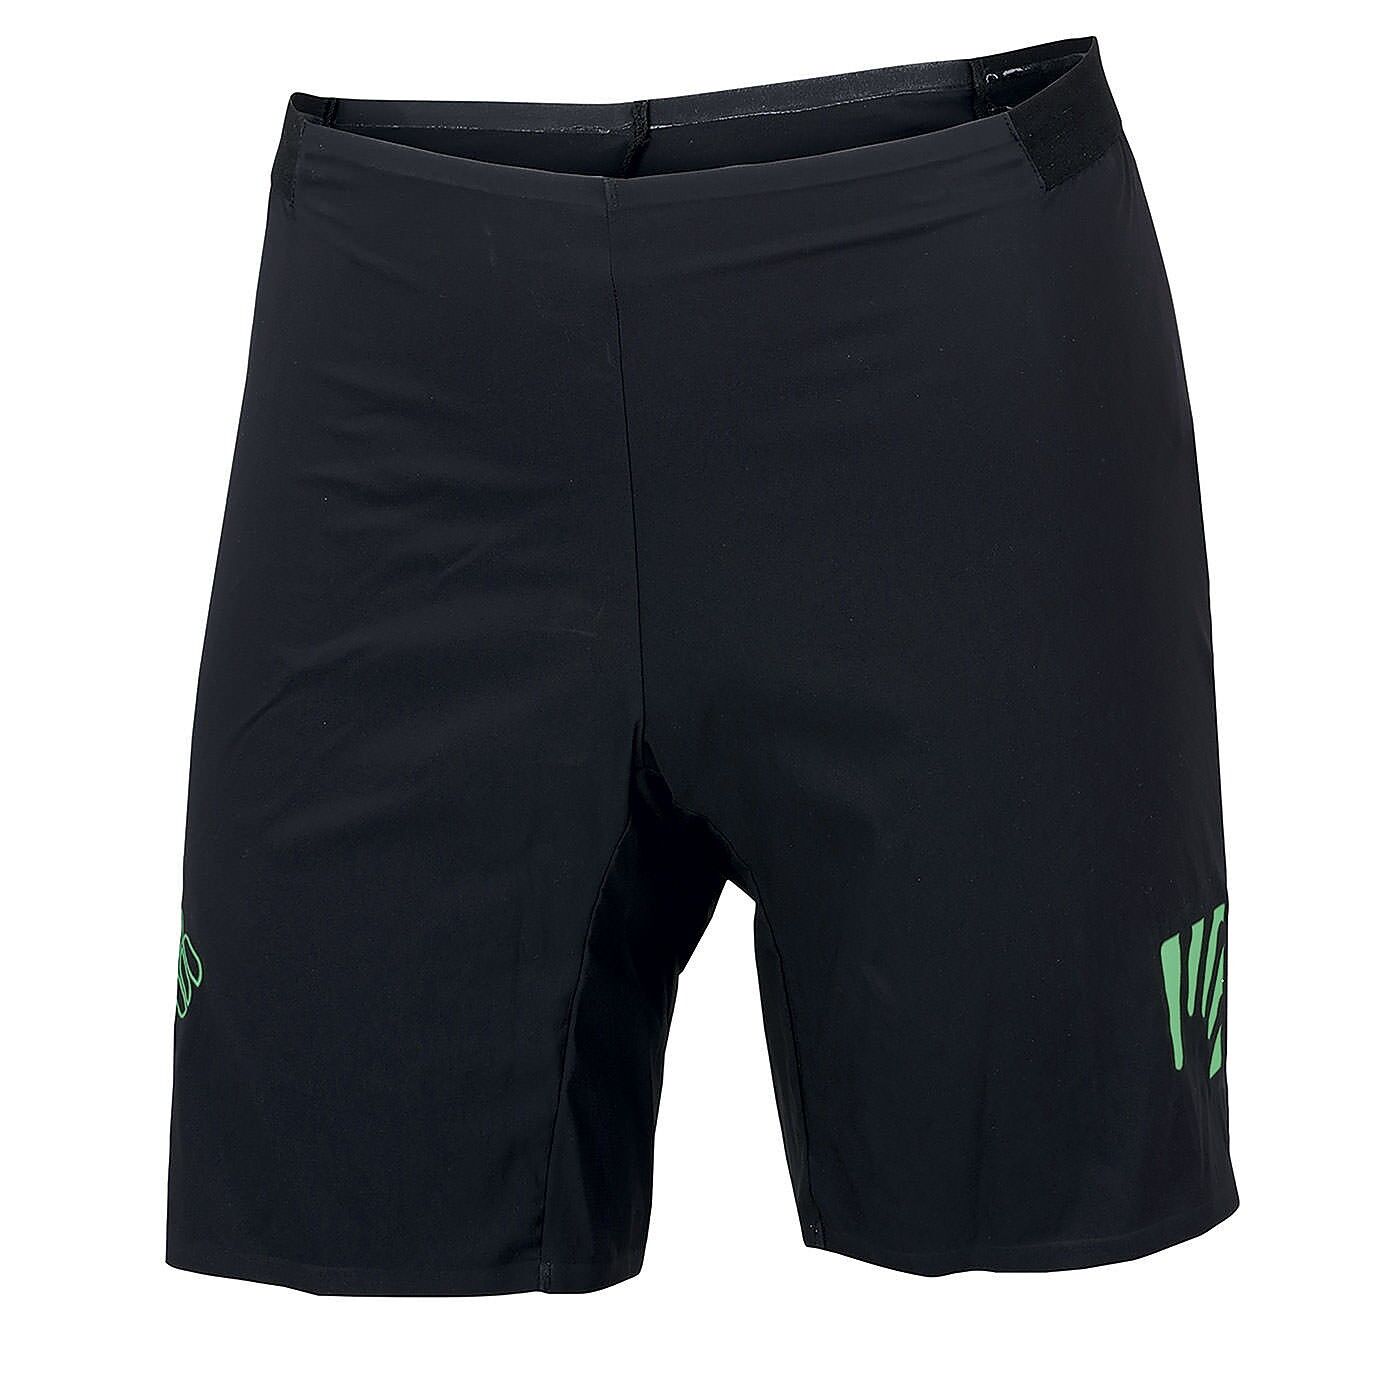 Karpos Lavaredo Short - Running shorts - Men's